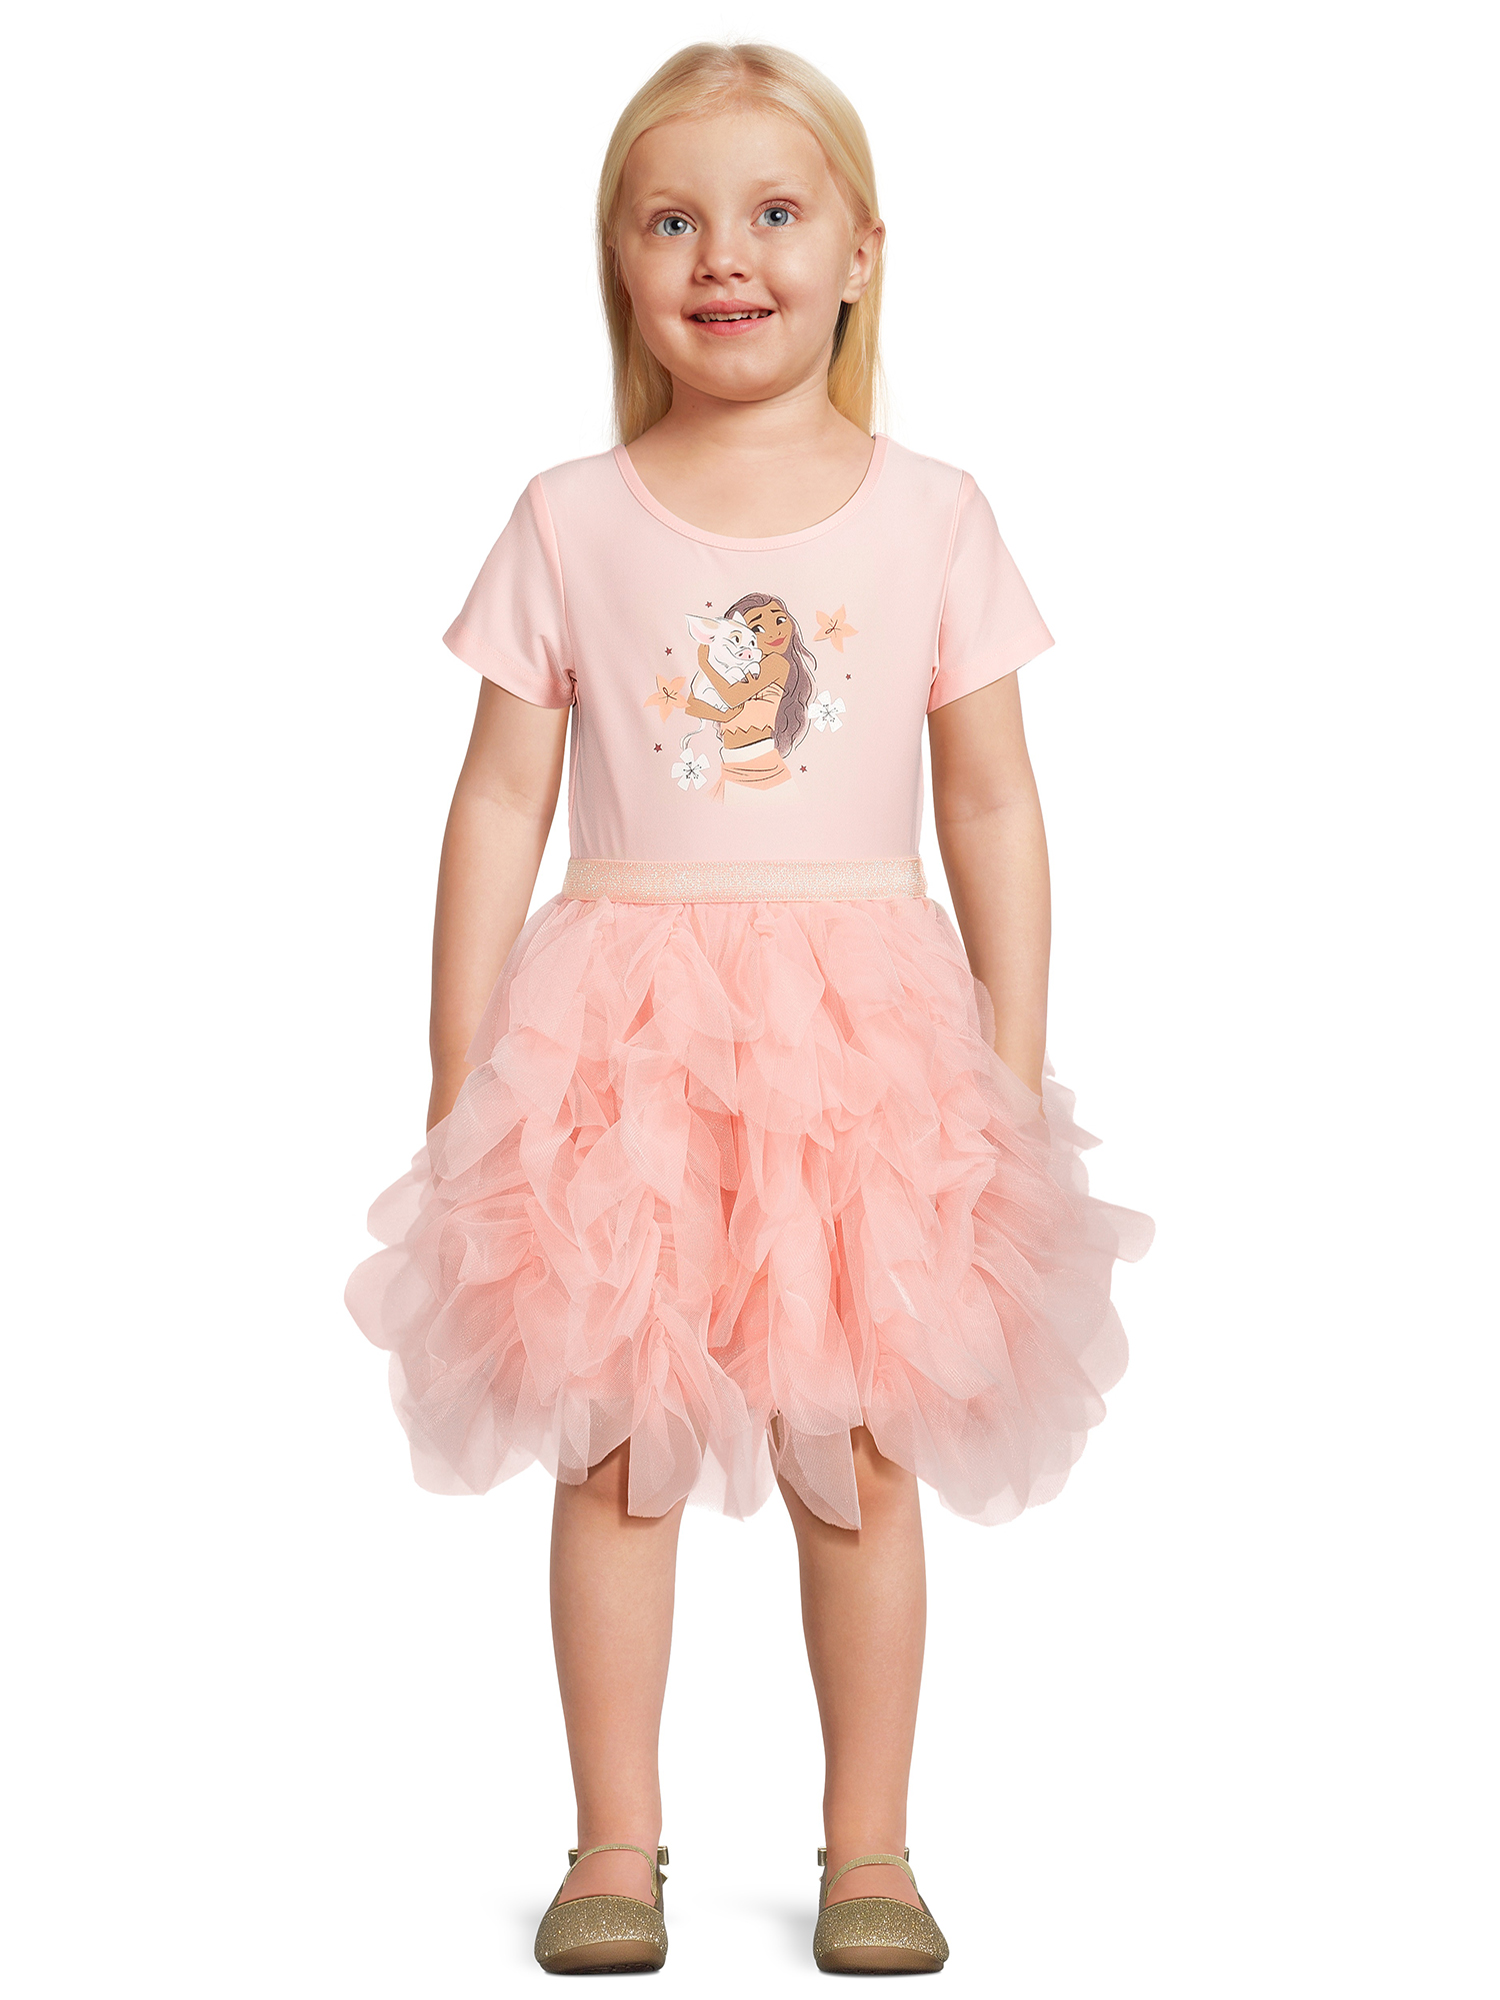 Disney Moana Toddler Girl Short Sleeve Tutu Dress, Sizes 12M-5T - image 1 of 6